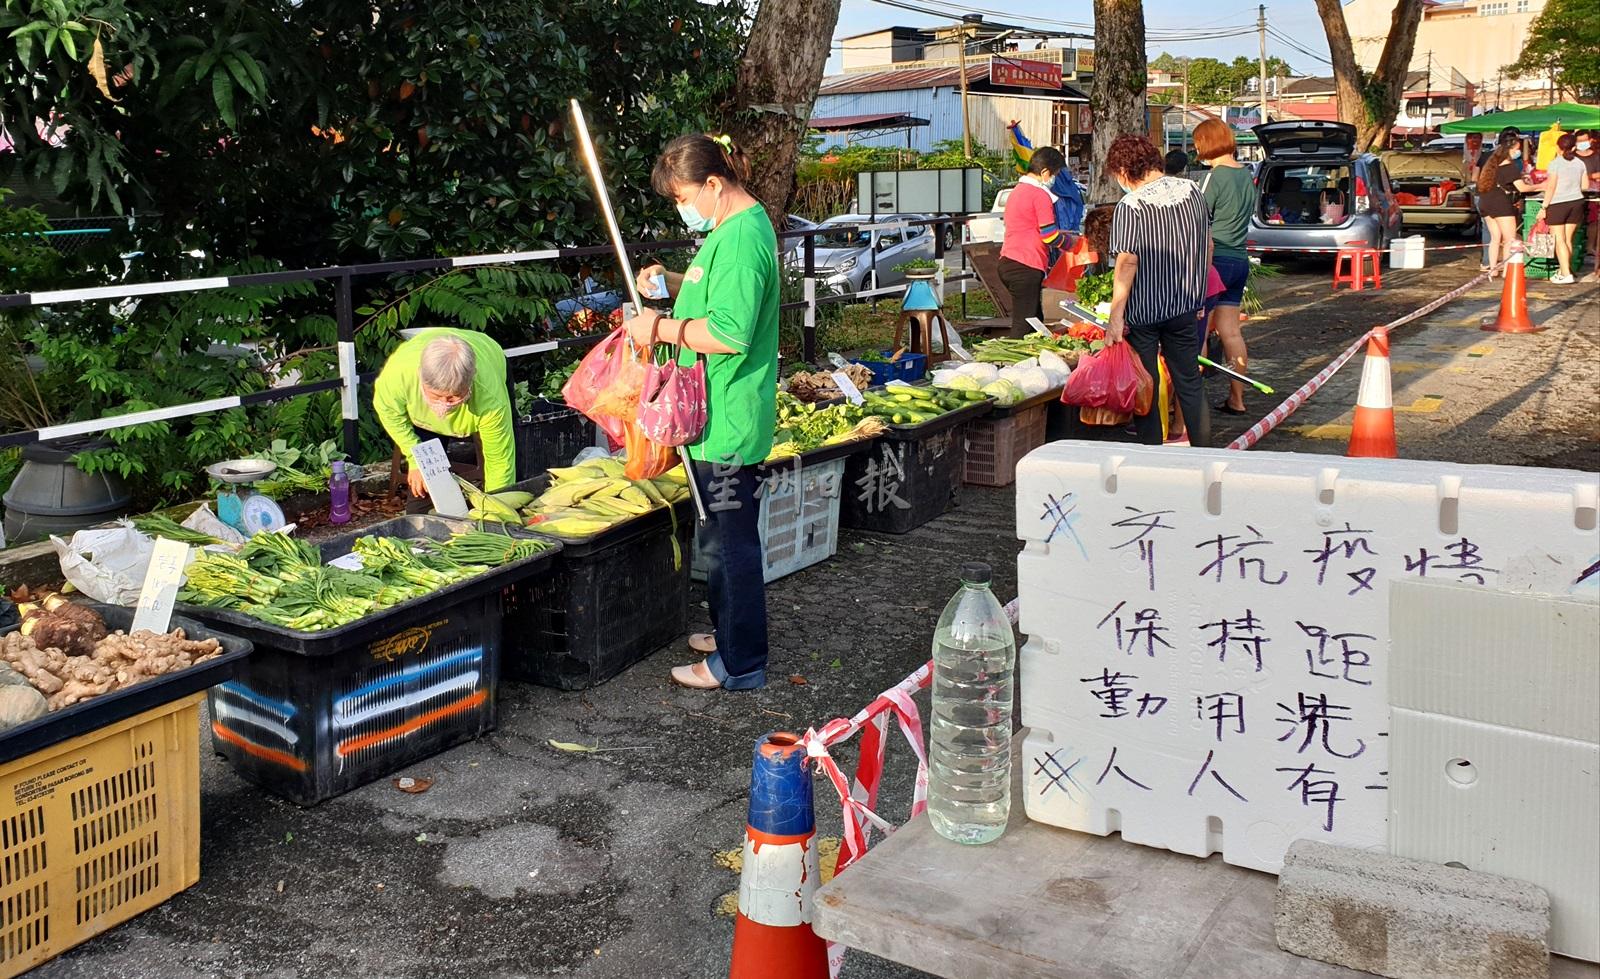 为确保小贩及消费者的安全，拉杭新村早市严格遵守标准作业程序。

